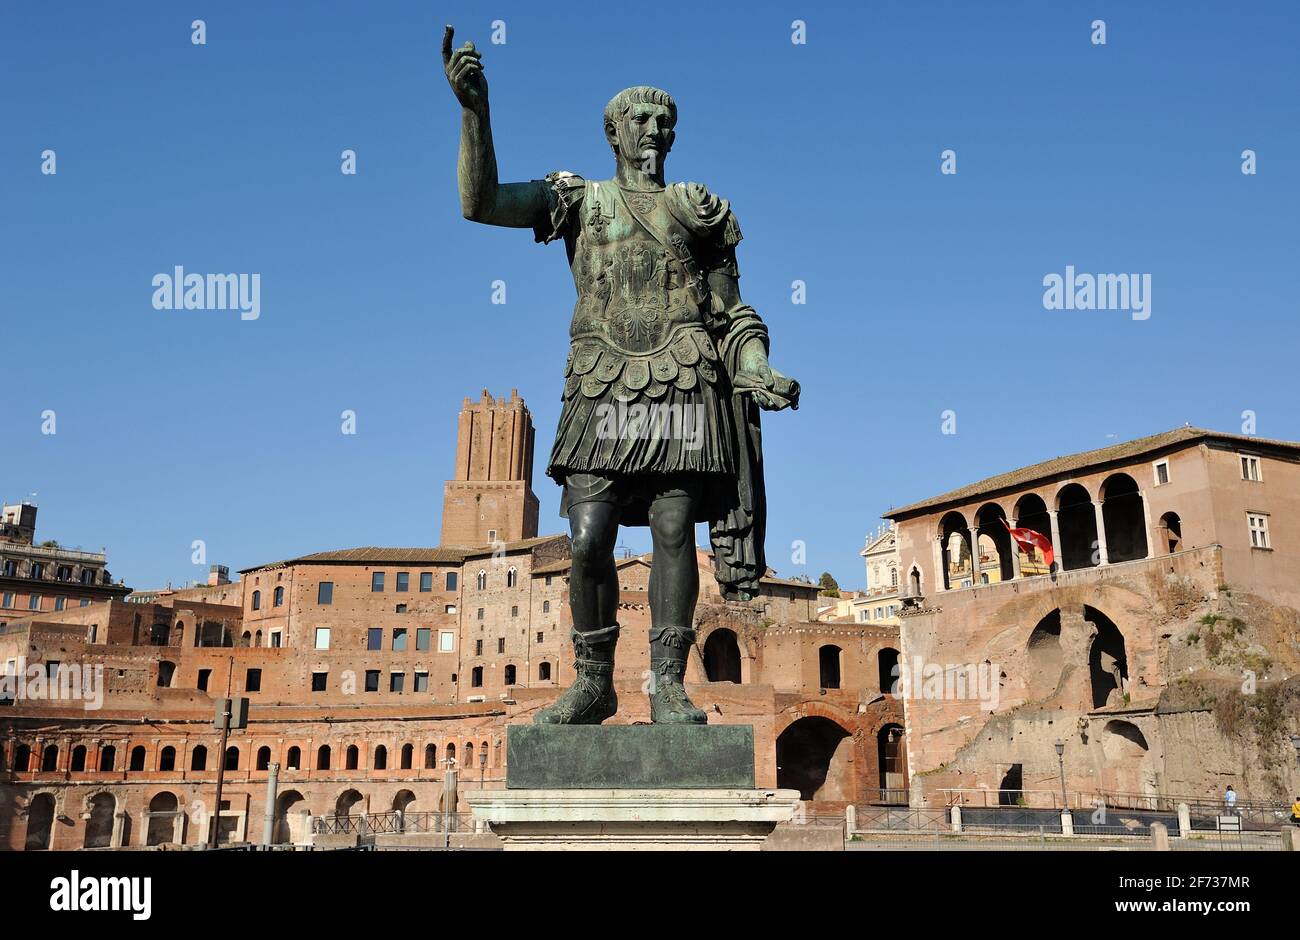 Italia, Roma, la estatua de bronce del emperador romano Trajano y los Mercados de Trajano Foto de stock